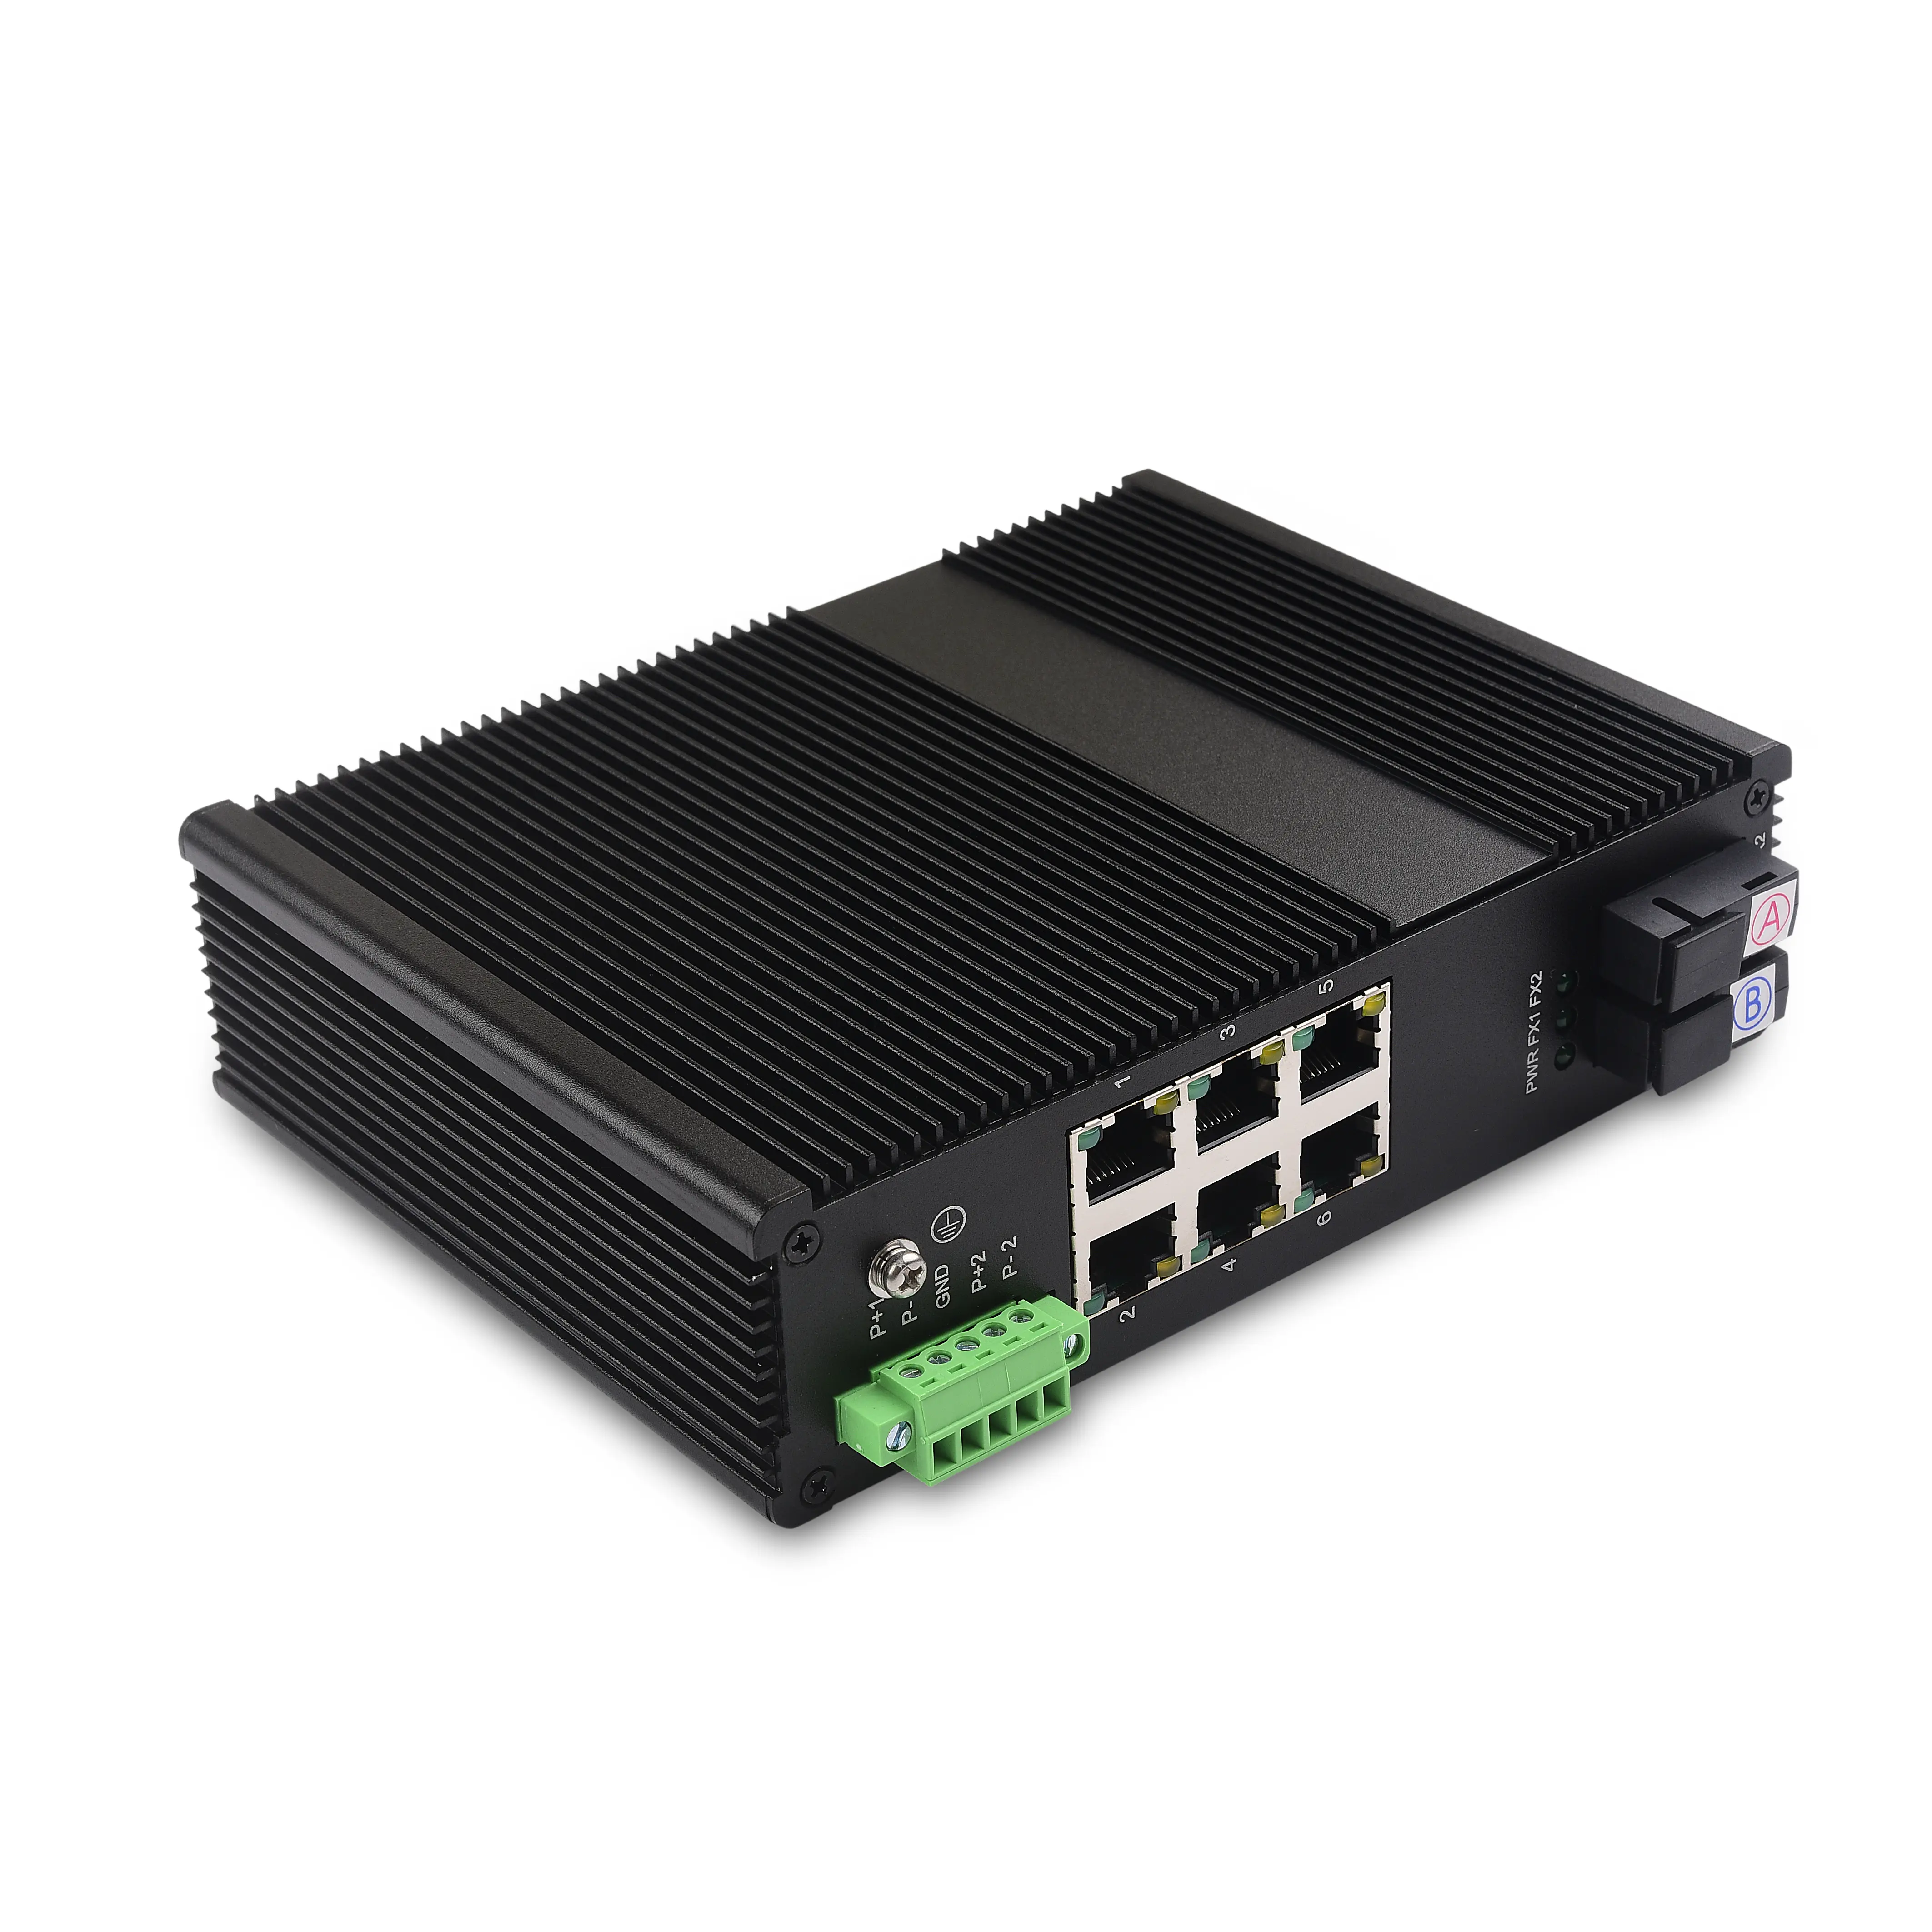 6x 10/100M Ethernet RJ45 ports and 2 100Base-FX uplink fast ethernet poe switch 8 port